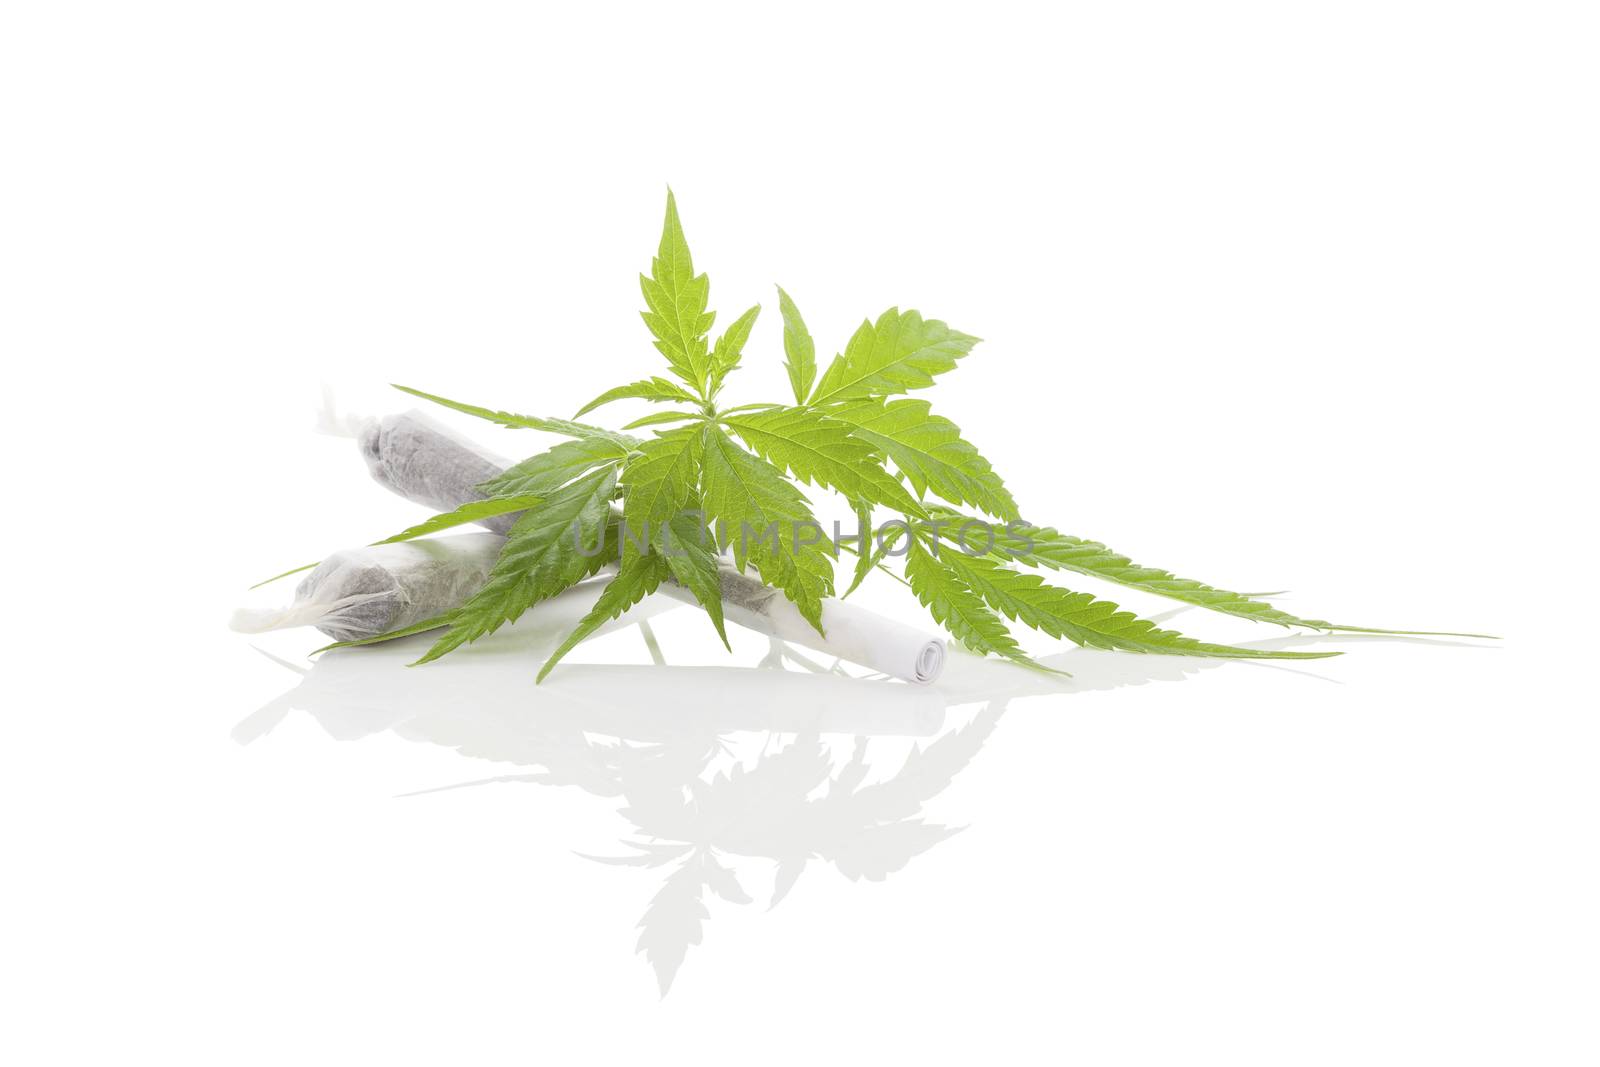 Marijuana cigarette joint, bud and foliage isolated on white background. Medical marijuana, alternative medicine. 